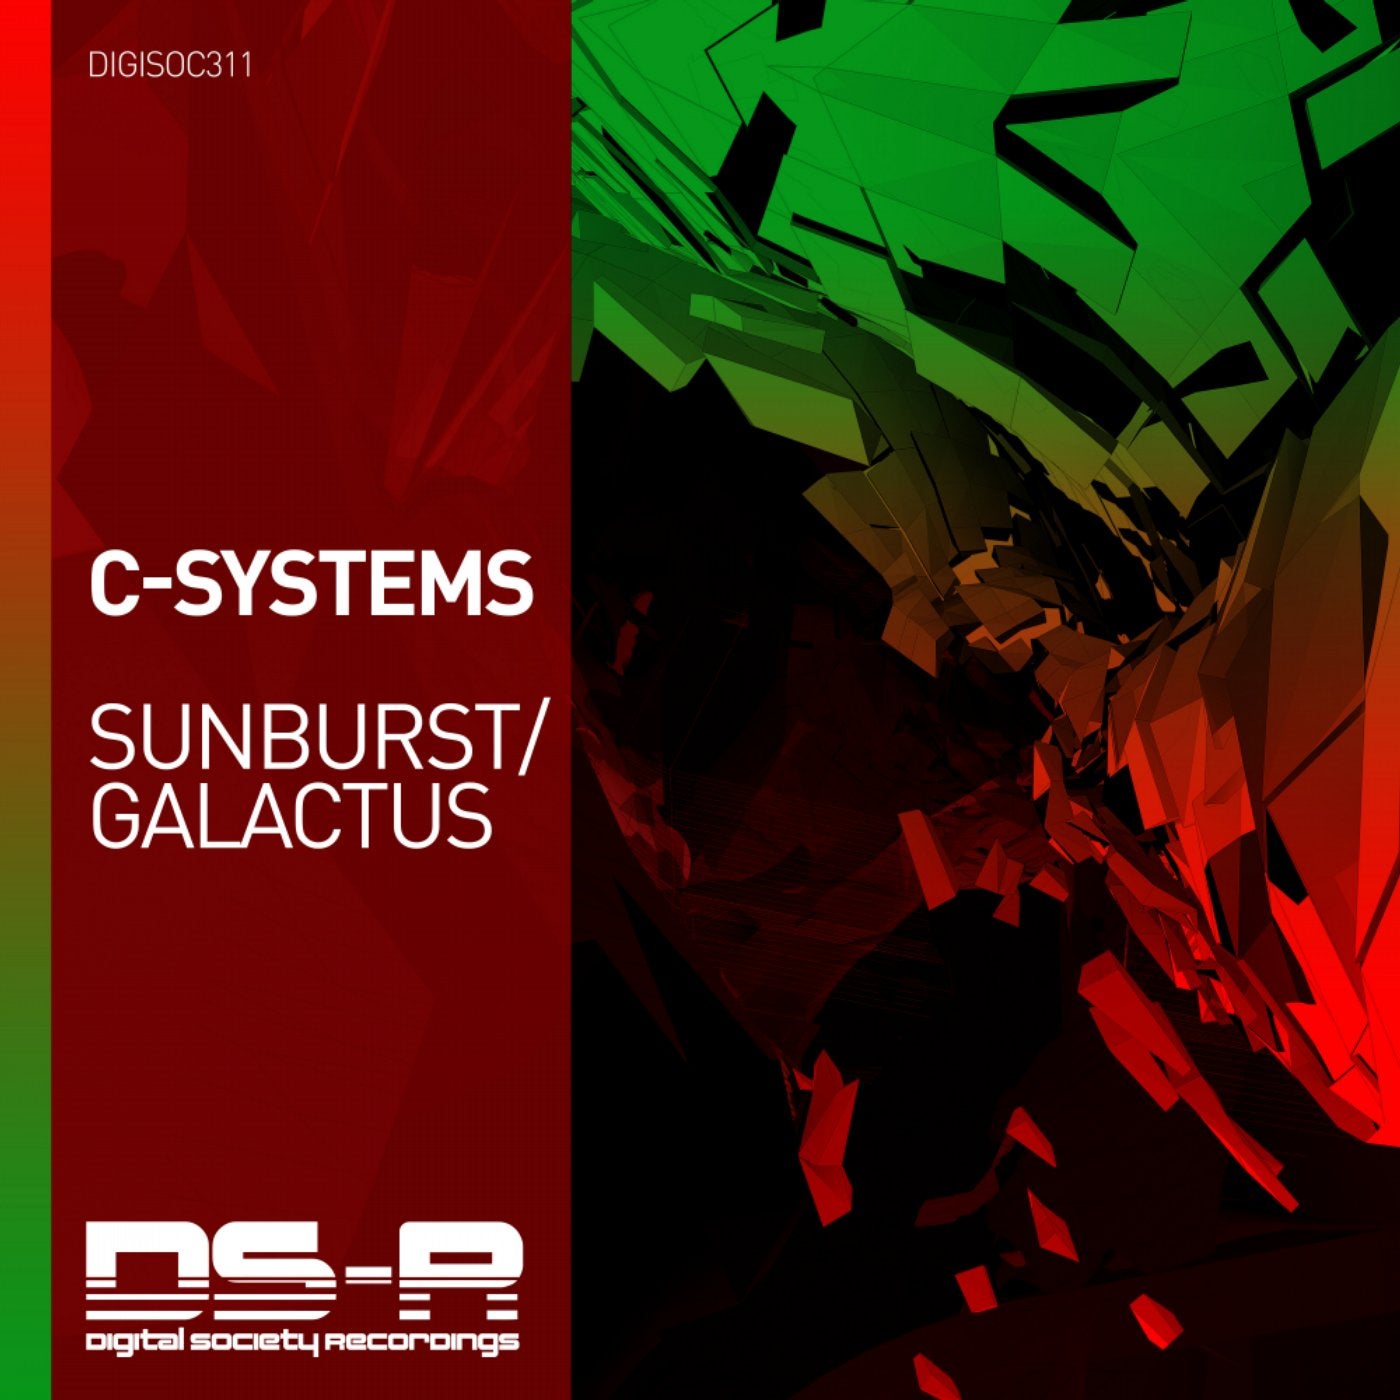 Sunburst / Galactus